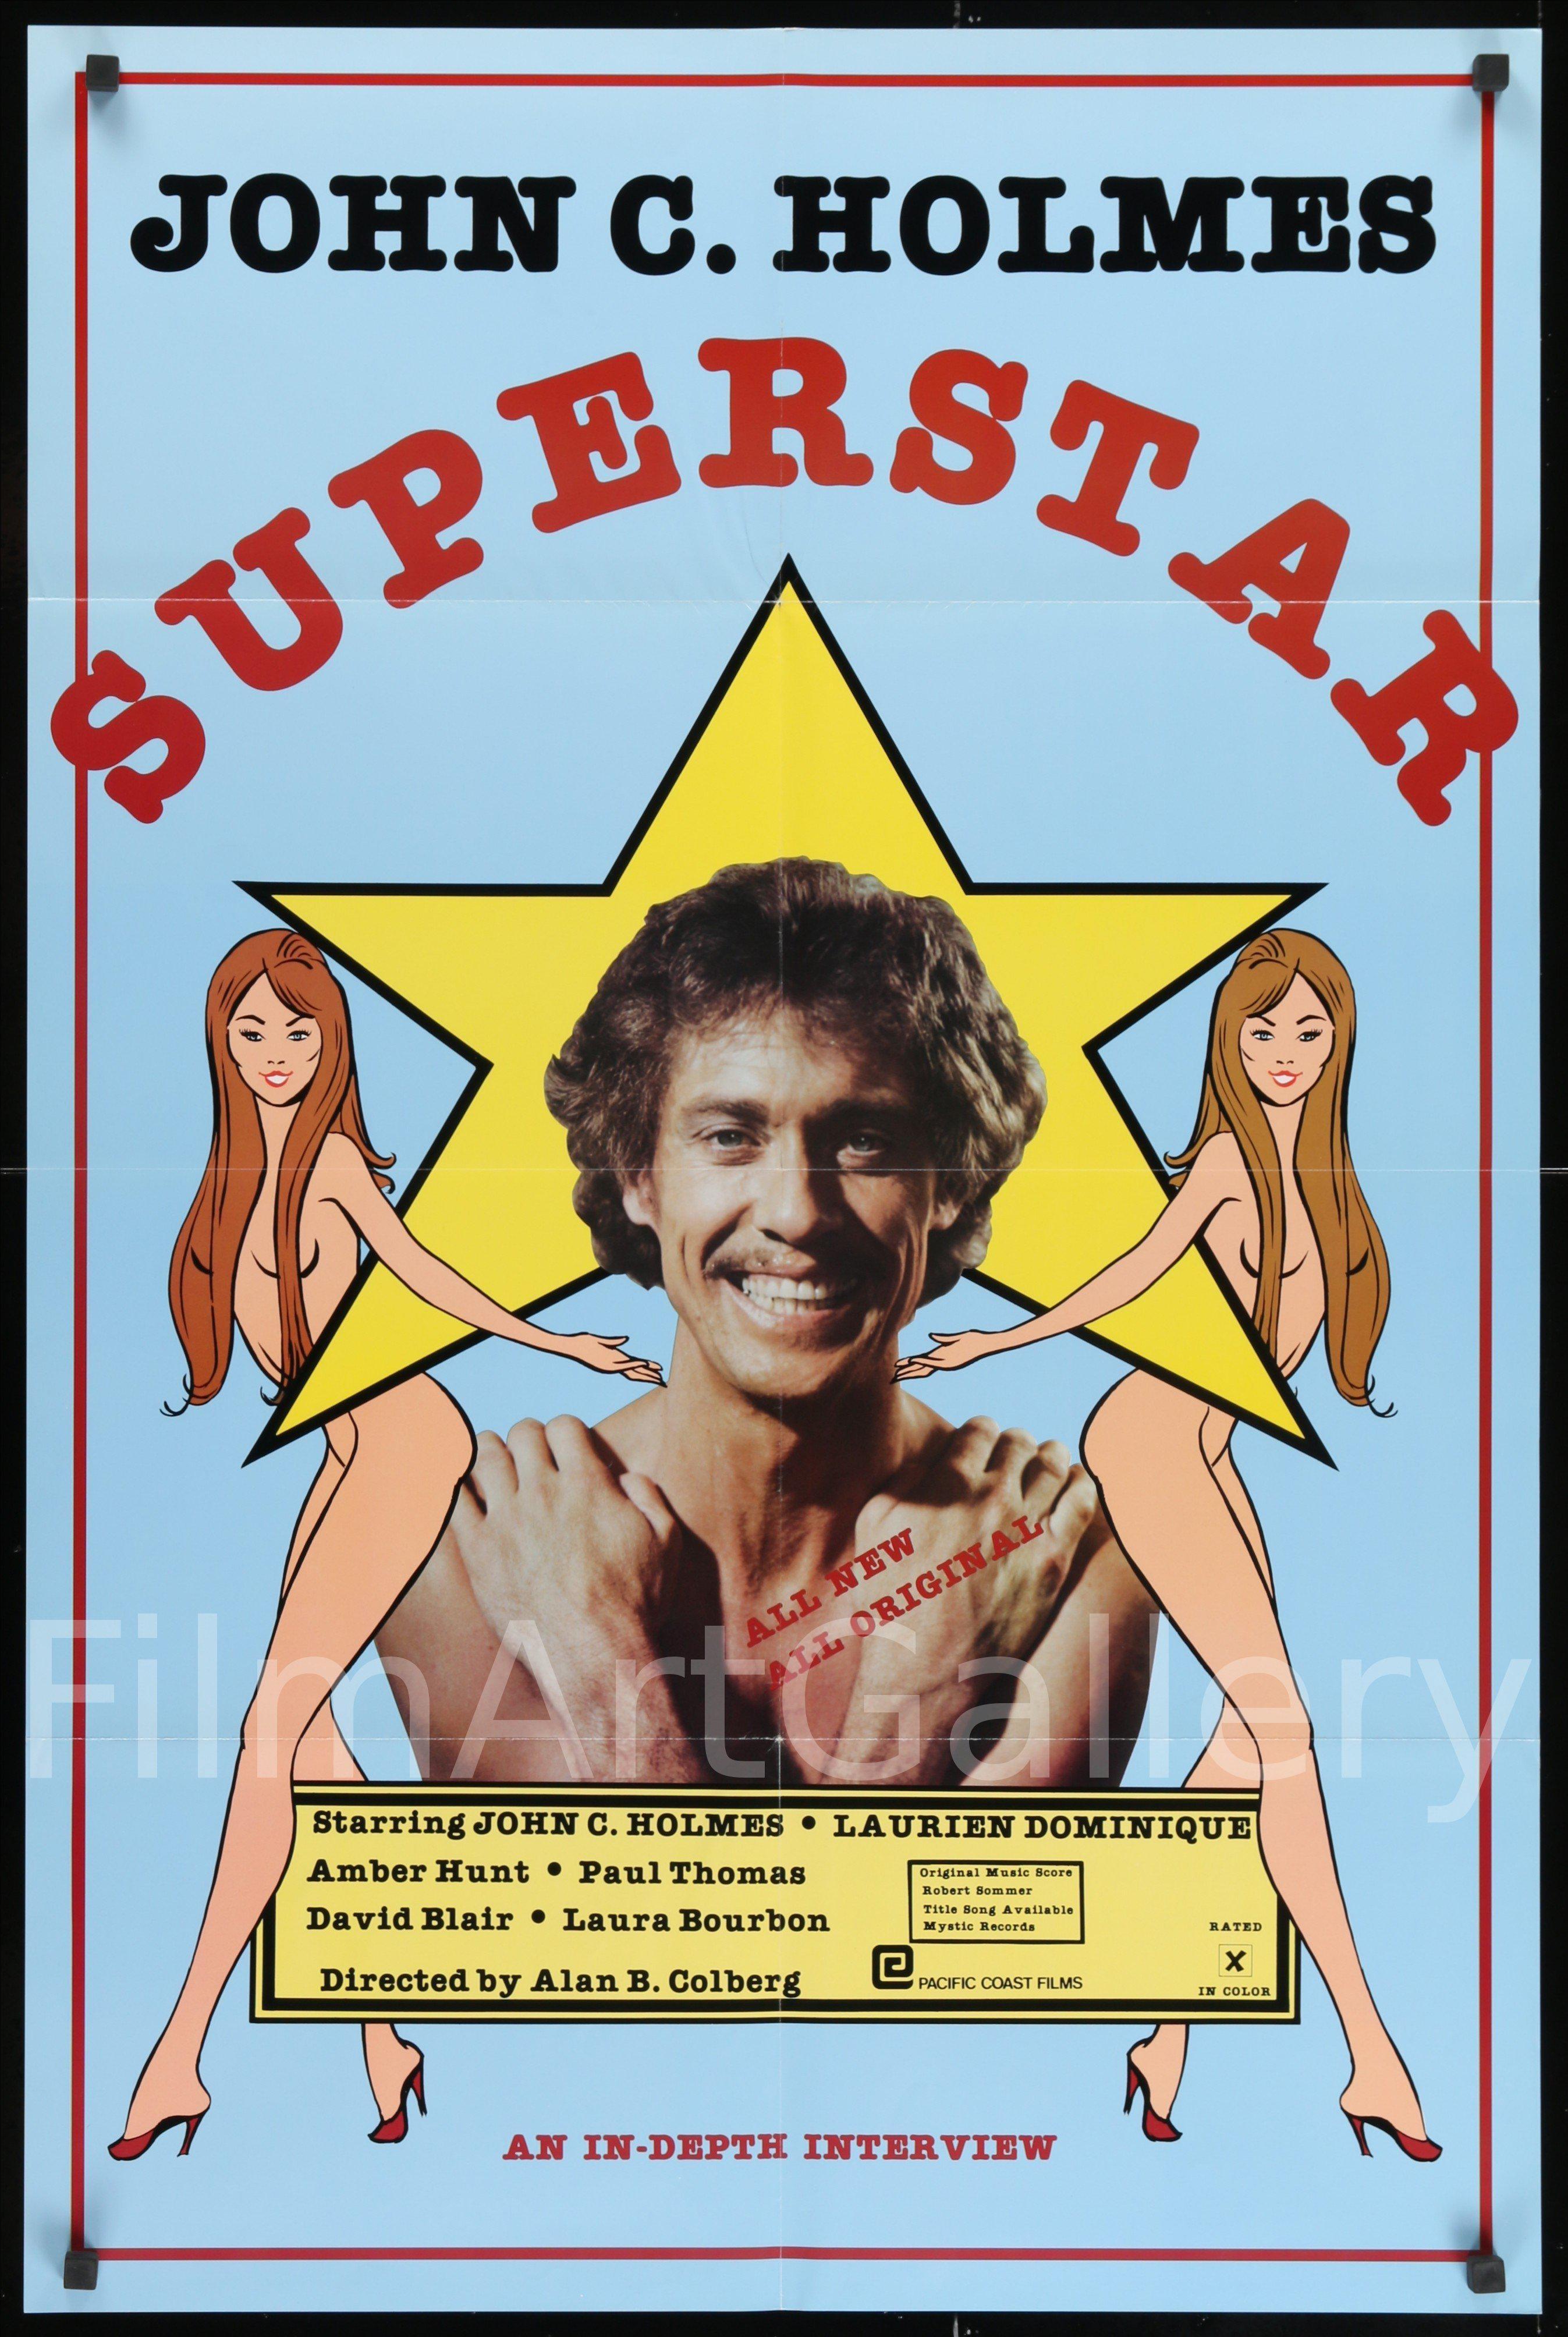 superstar movie poster